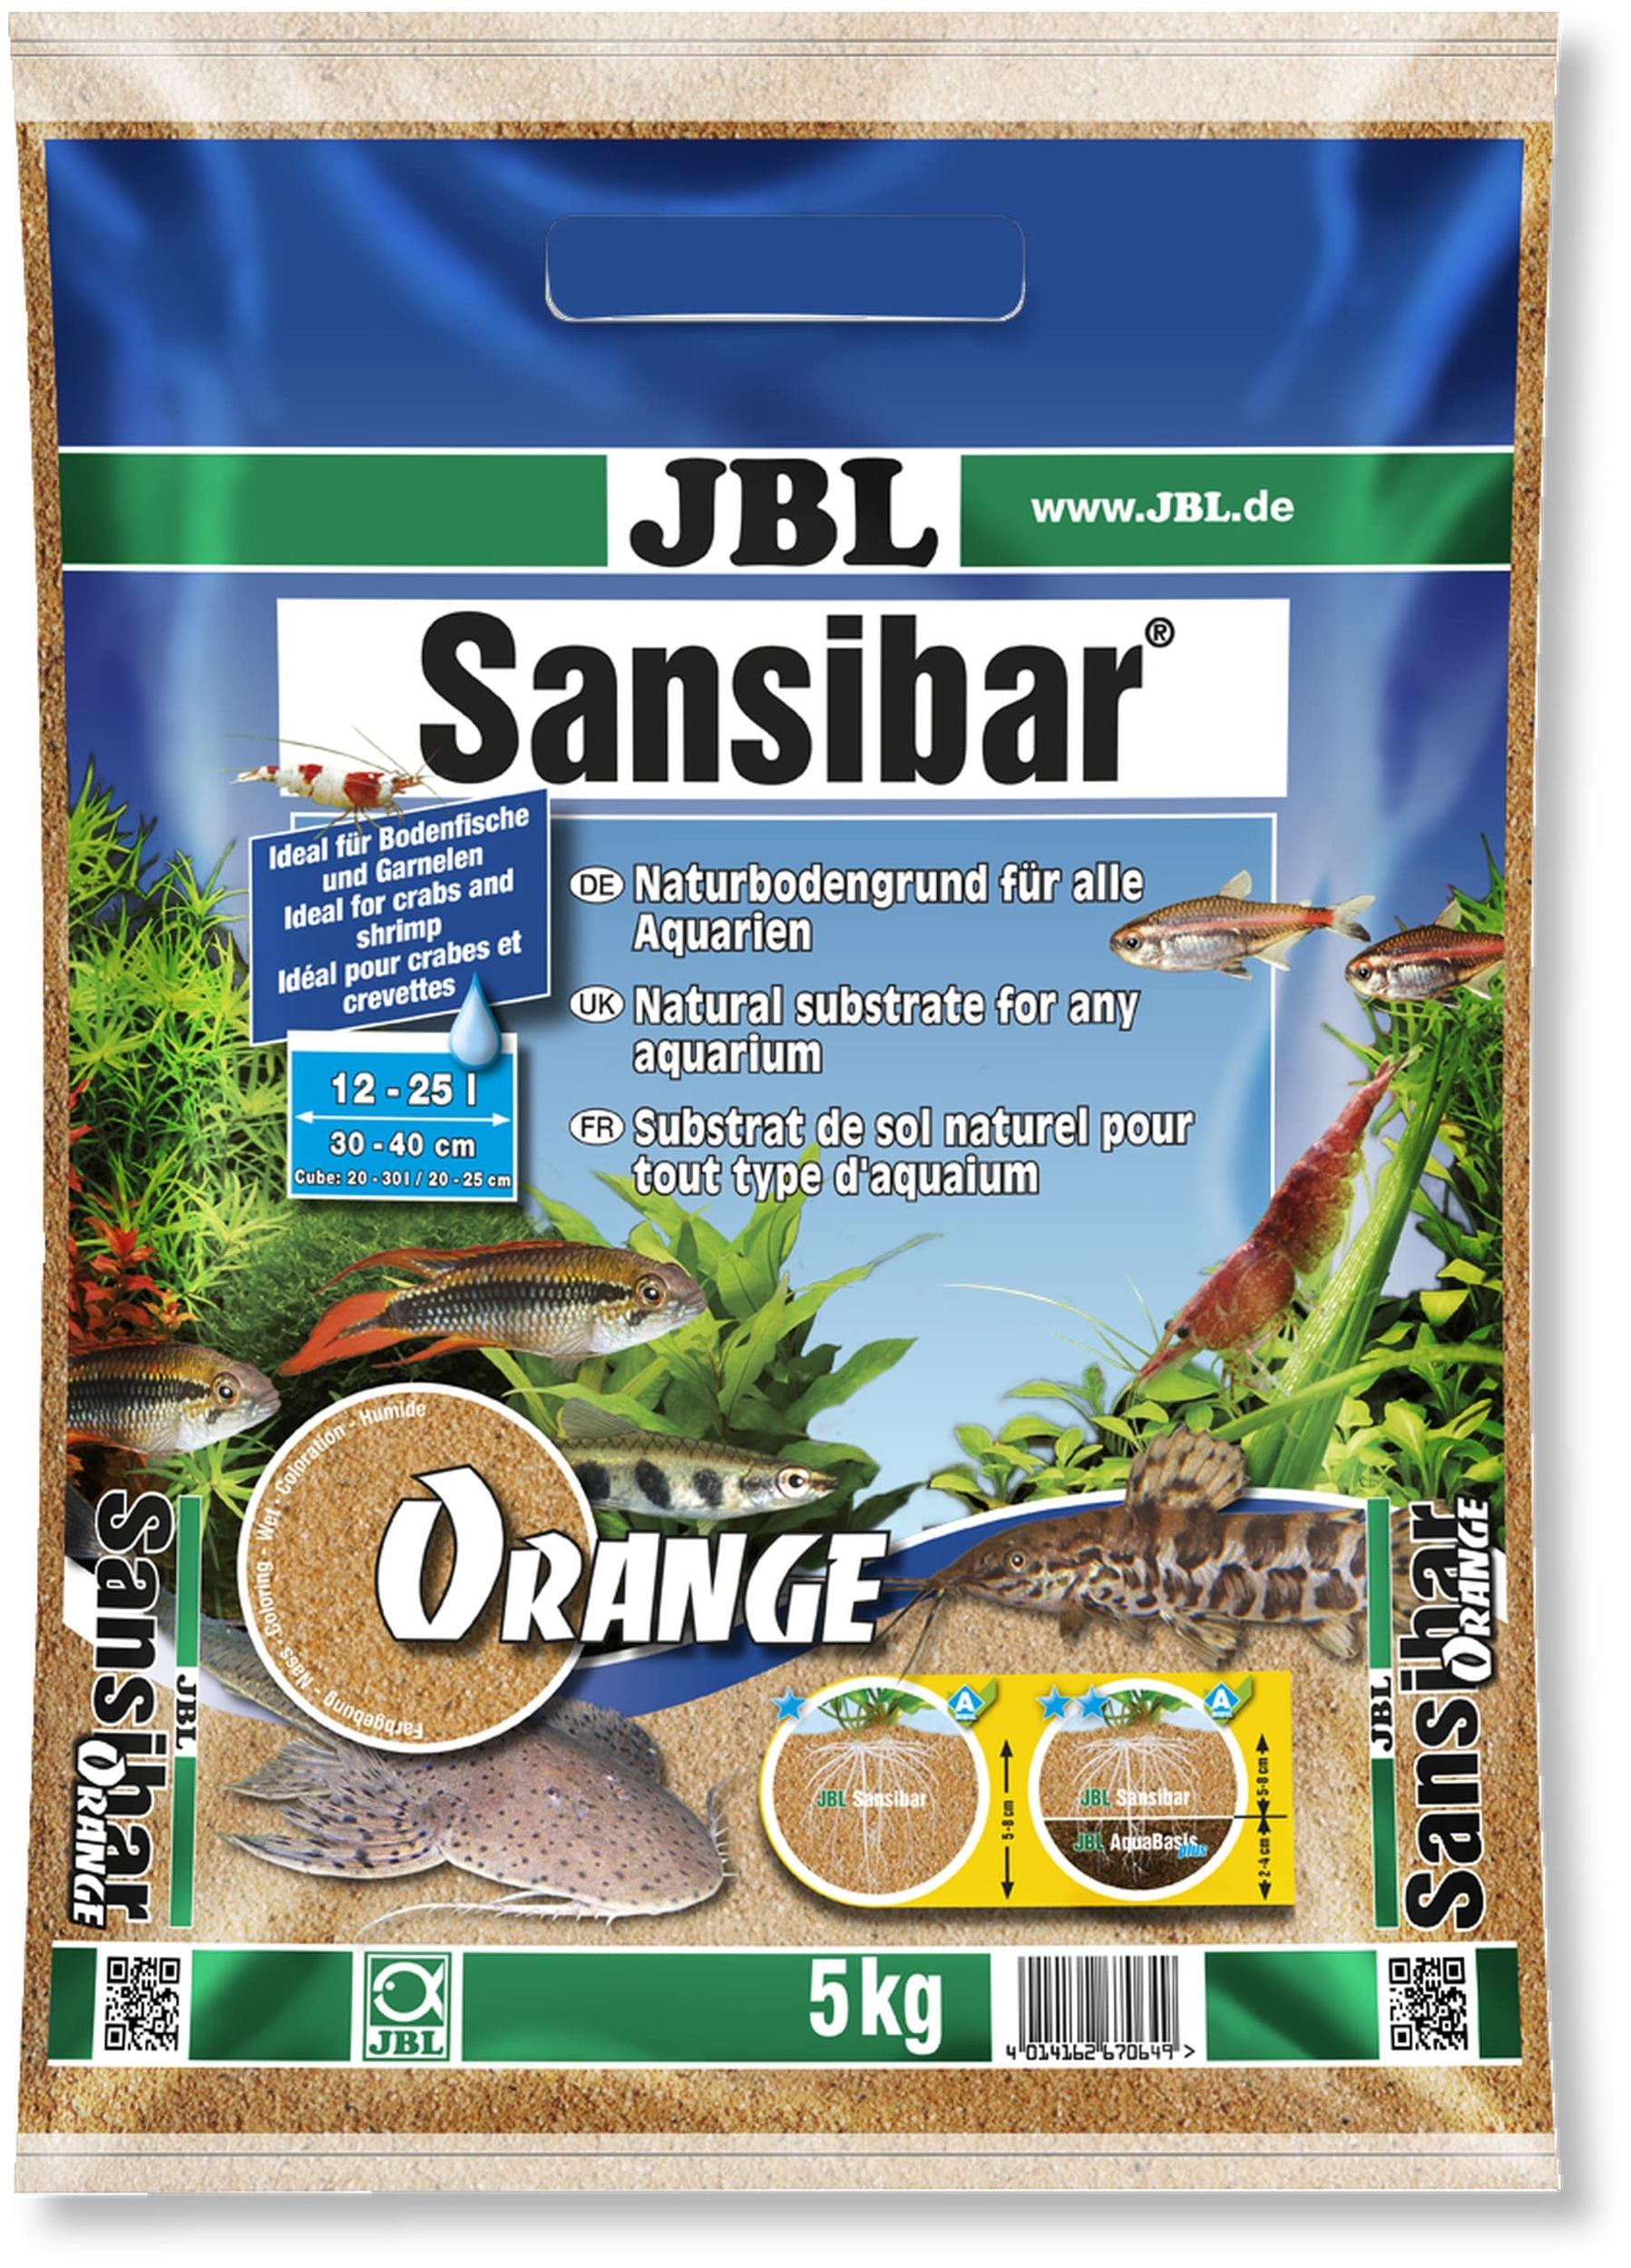 jbl-sansibar-orange-5-kg-substrat-de-sol-naturel-fin-couleur-orange-0-2-a-0-6-mm-pour-aquarium-d-eau-douce-min